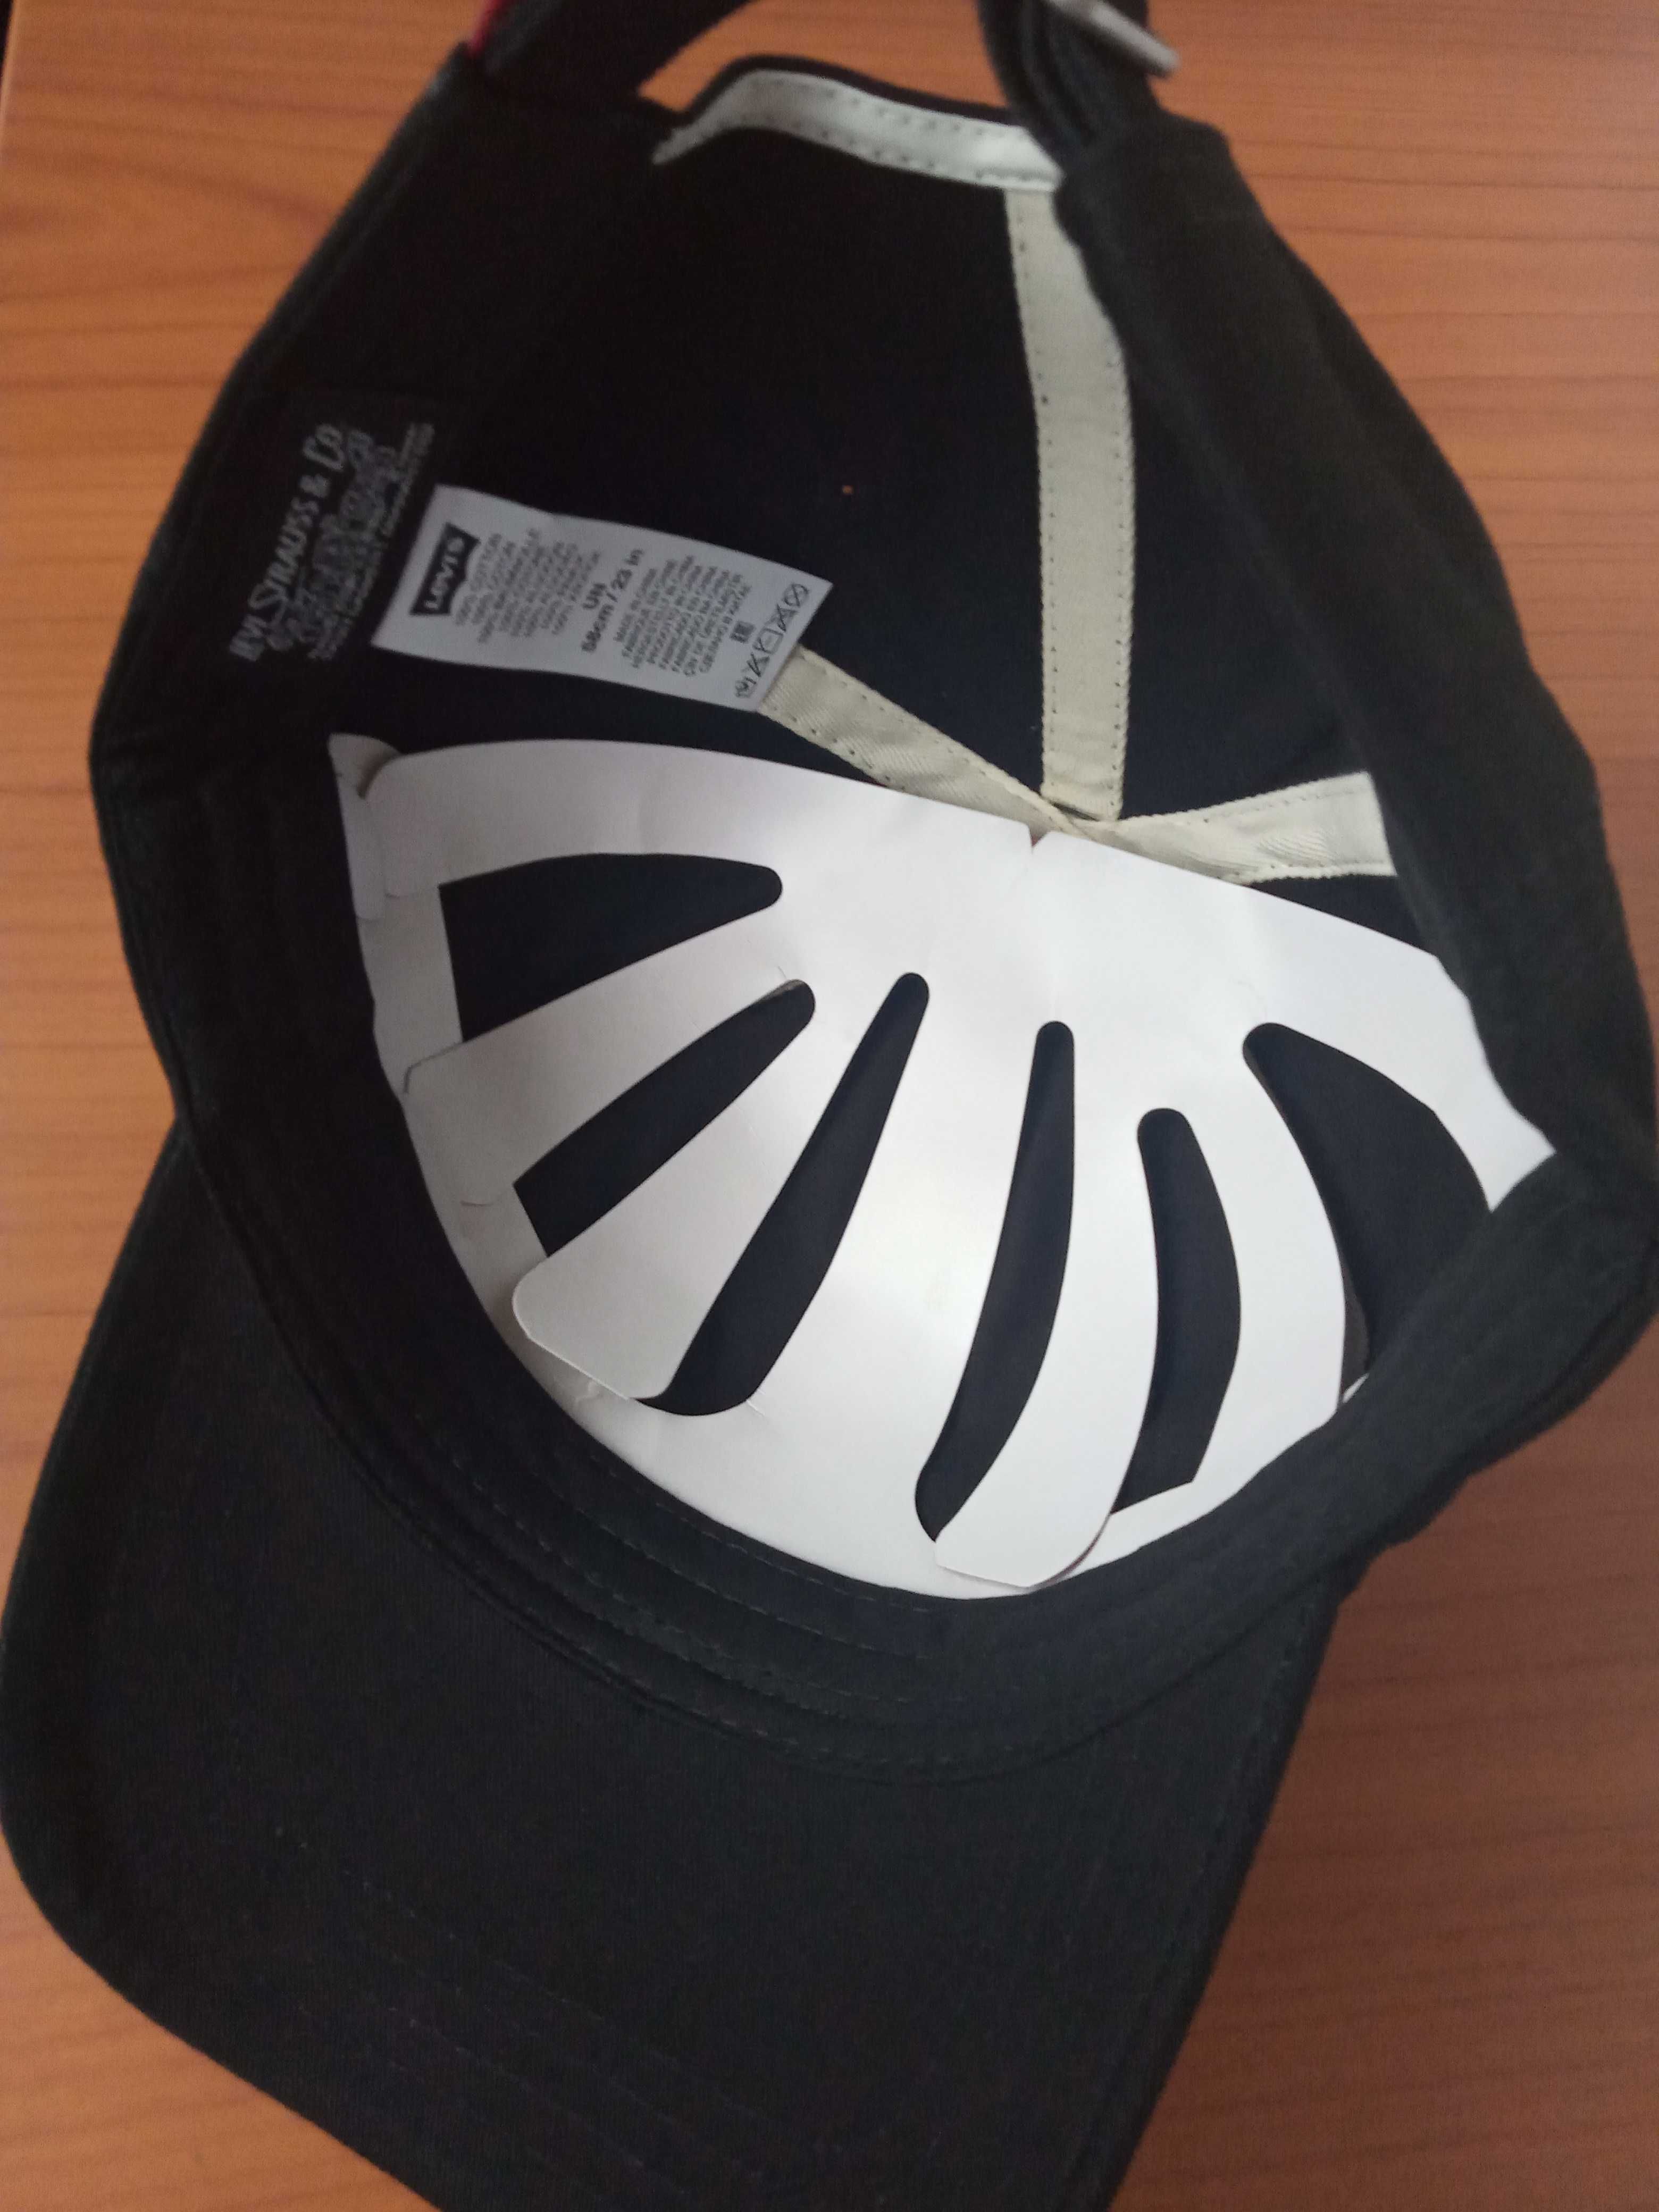 Nowa 100%  oryginalna czapka z daszkiem Levis czarna unisex